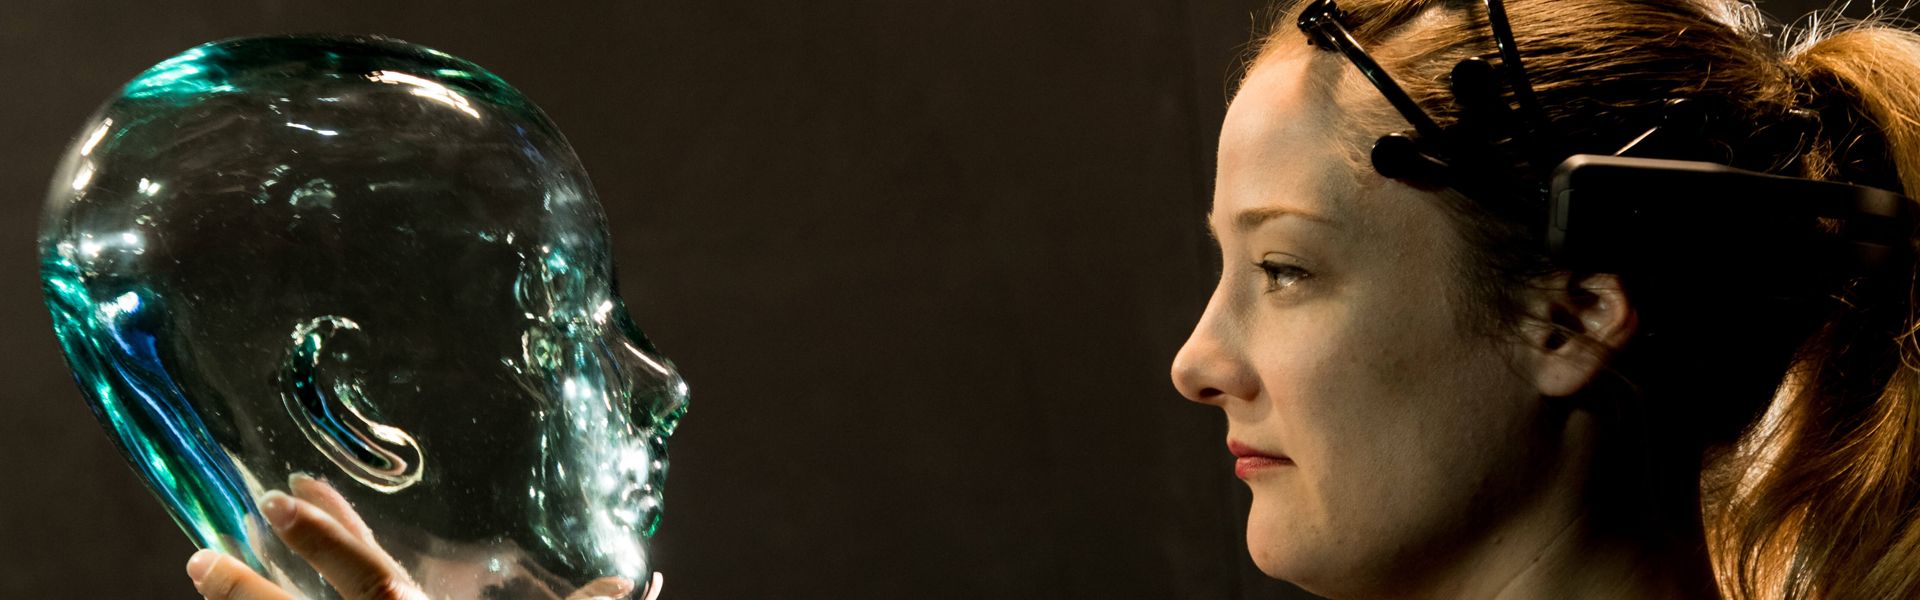 Frau hält gläsernes Modell eines menschlichen Kopfes